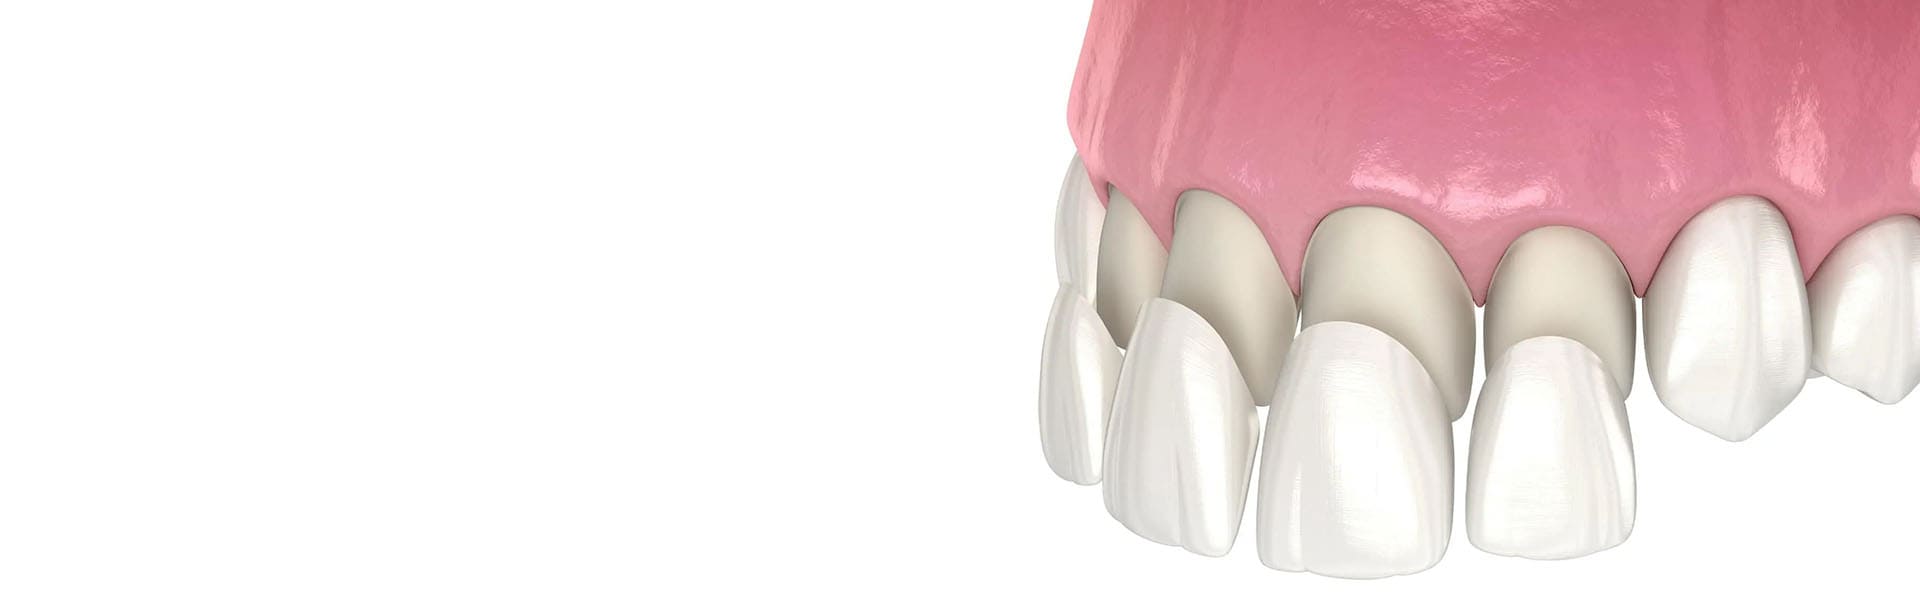 باندینگ دندان - پیوند دندان